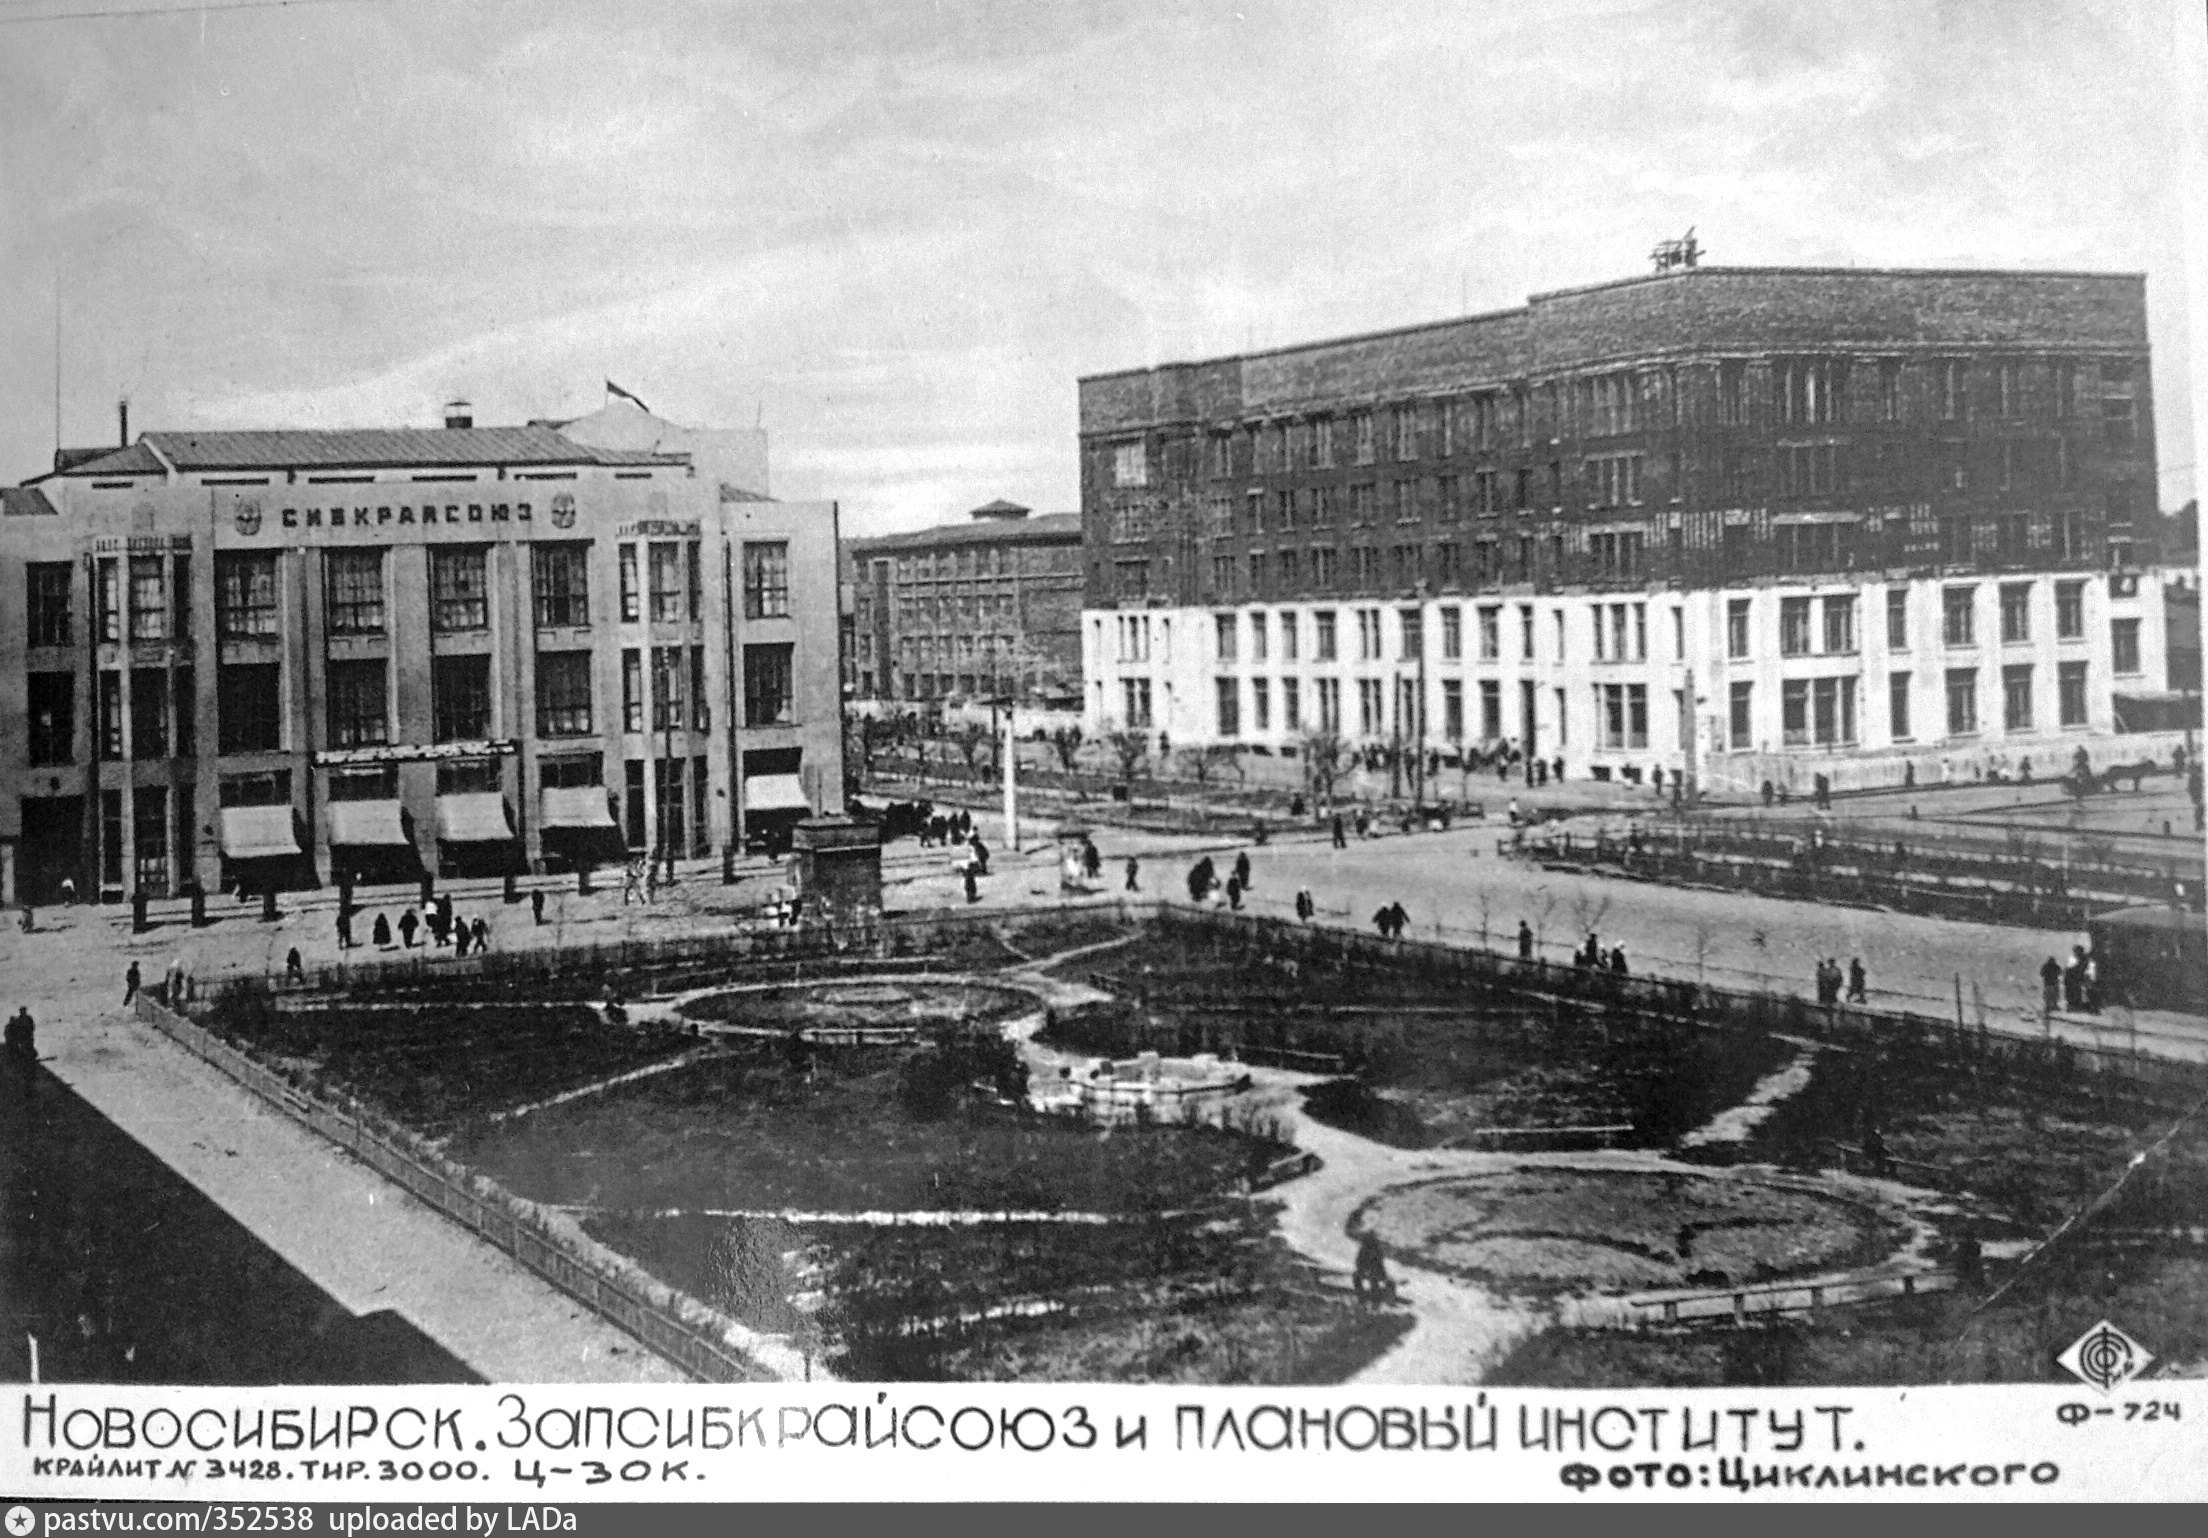 Новосибирск 1930 годы. Площадь Ленина Новосибирск 1941. Площадь Ленина Новосибирск 1950. Площадь Ленина Новосибирск 1970. Новосибирск площадь Ленина 1910.